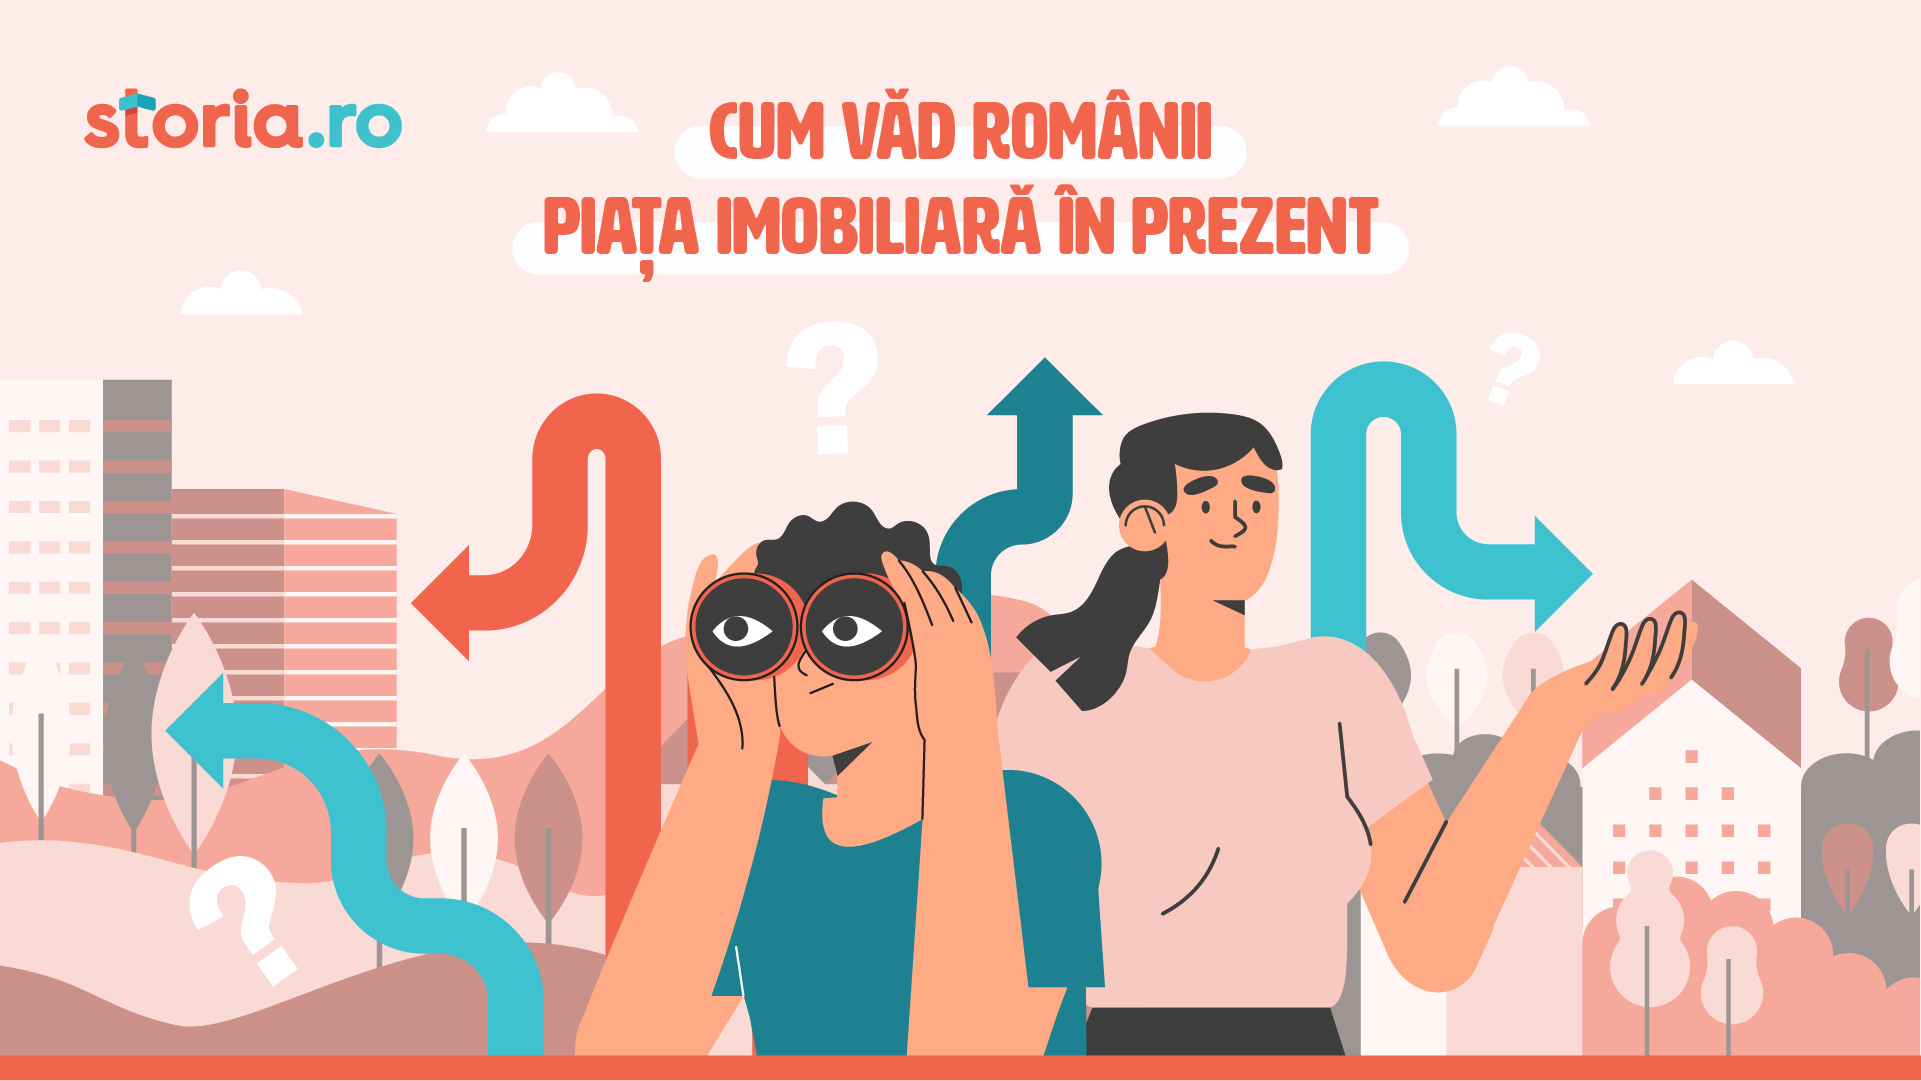 Piața imobiliară în stagnare: o treime dintre români așteaptă să vadă scăderi semnificative de prețuri anul viitor